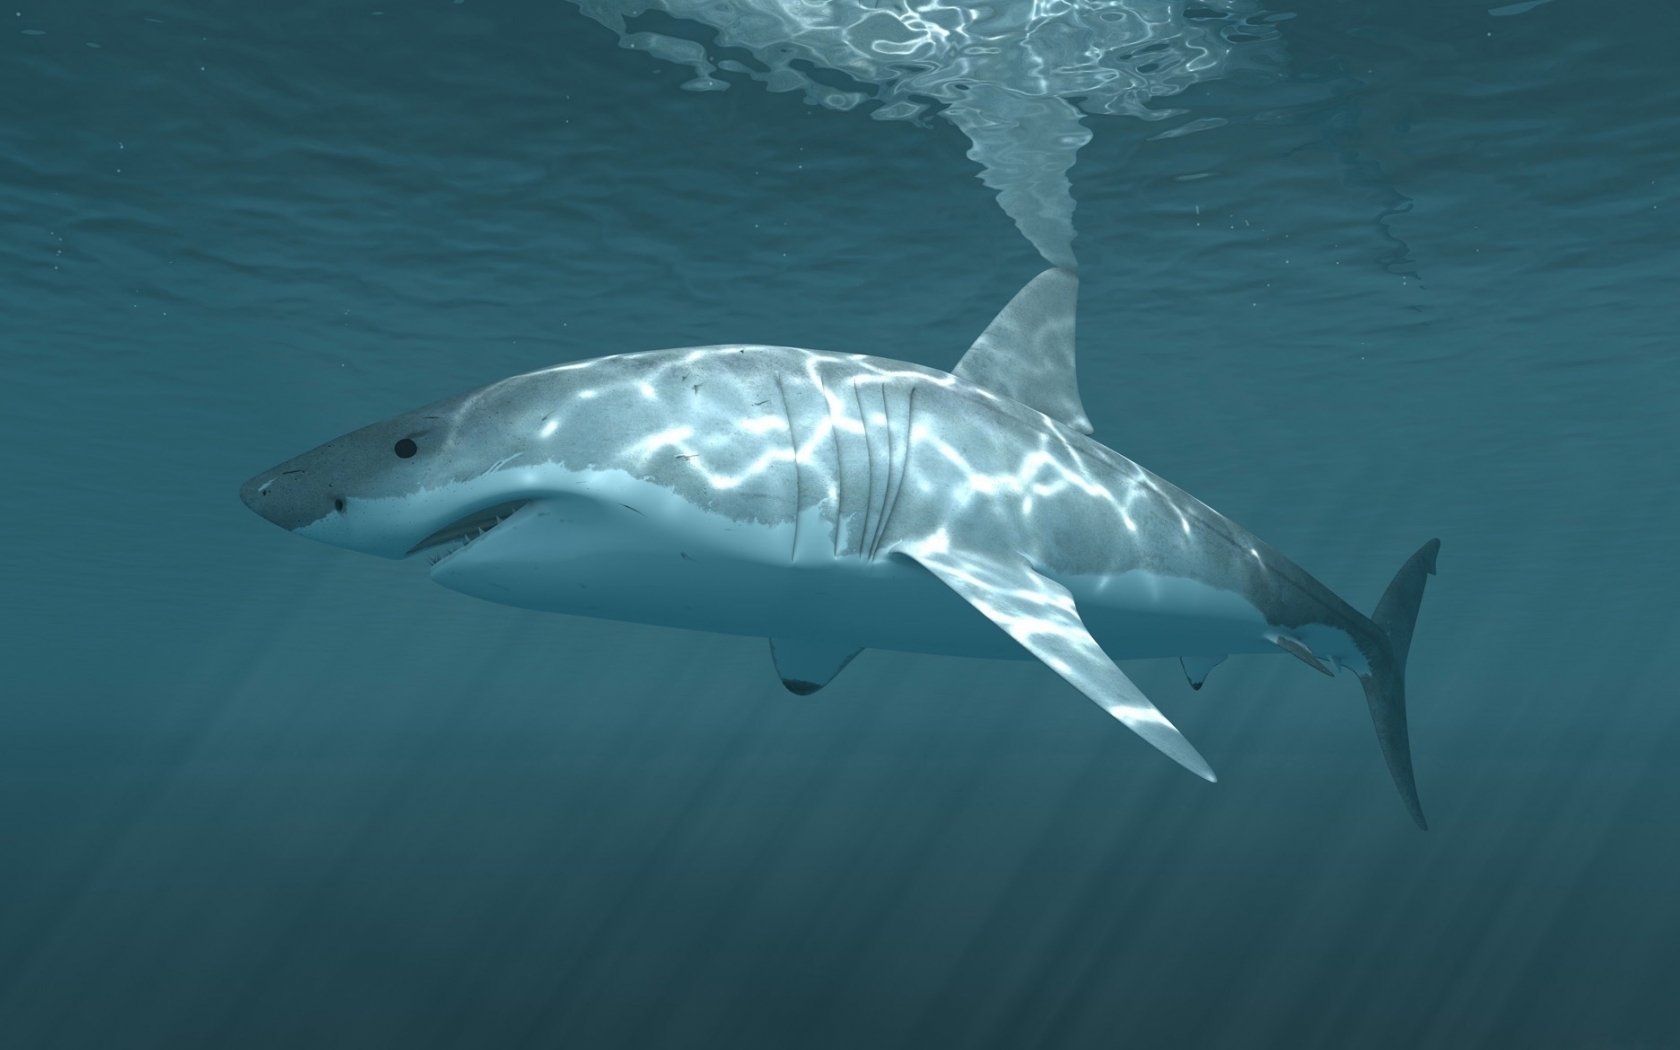 Descarga gratuita de fondo de pantalla para móvil de Animales, Tiburones.